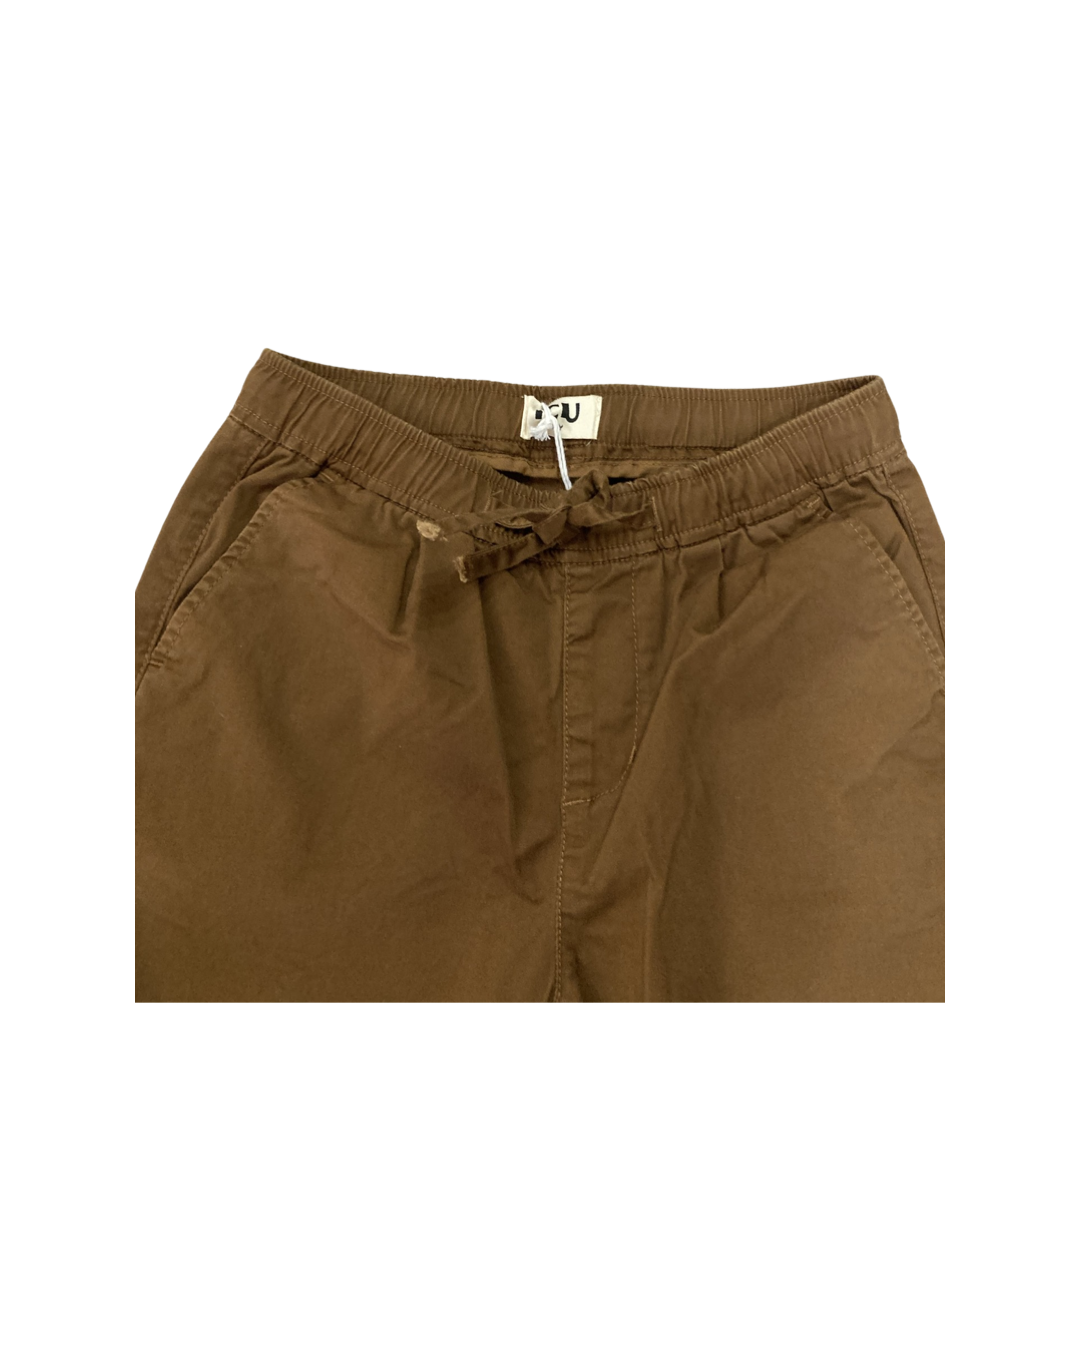 pantalone , Pantalone colore Bruciato con elastico in vita per Ragazzo da 8anni a 16anni Y-Clu BY9002 - BabyBimbo 0-16, abbigliamento bambini